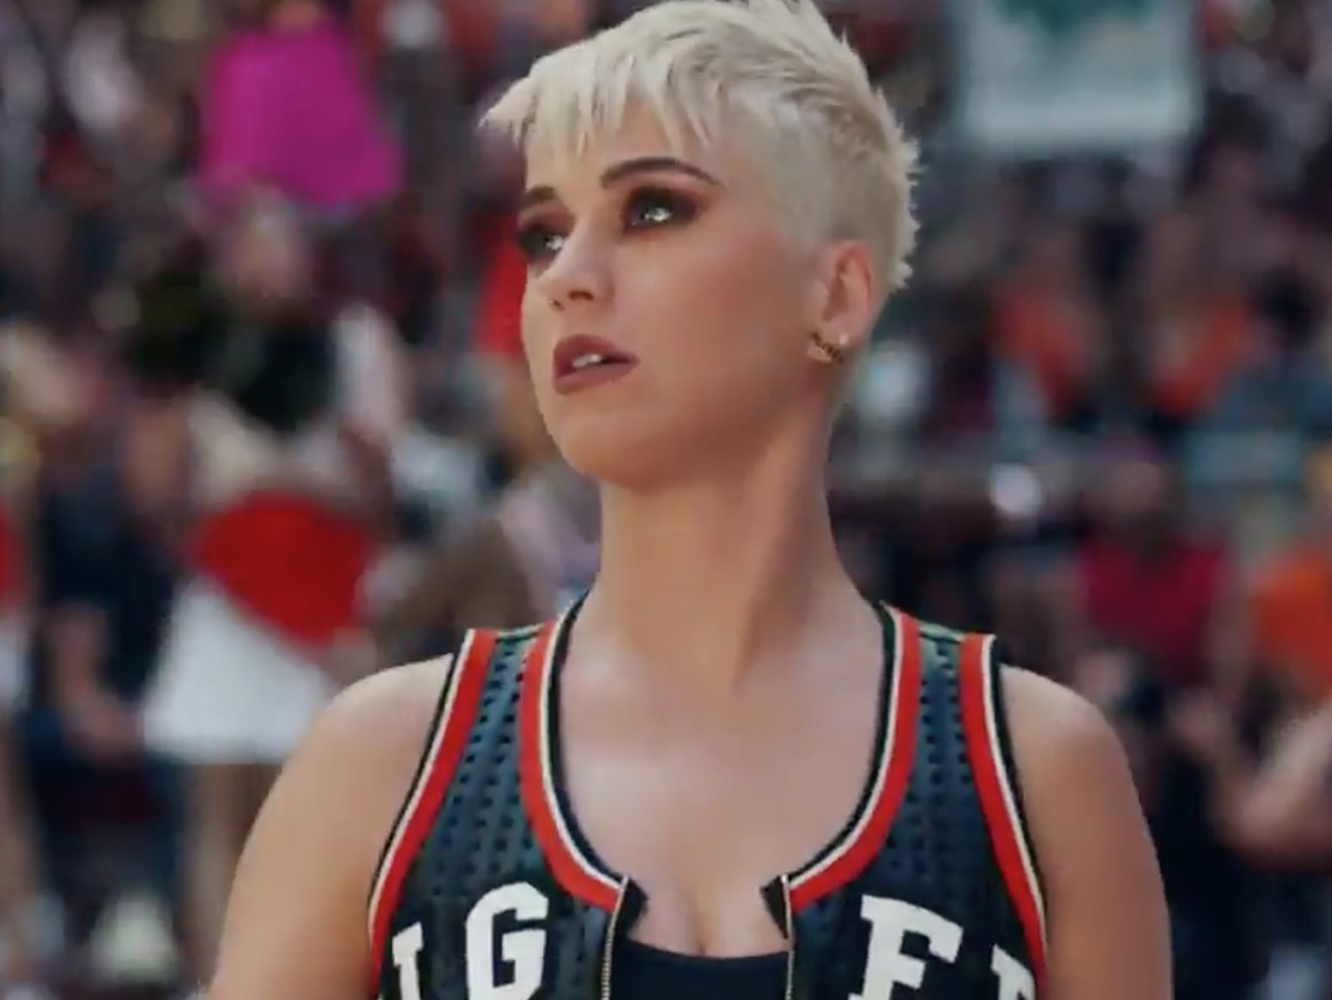  Adelanto del «catastrófico» vídeo para ‘Swish Swish’ de Katy Perry, aún sin fecha